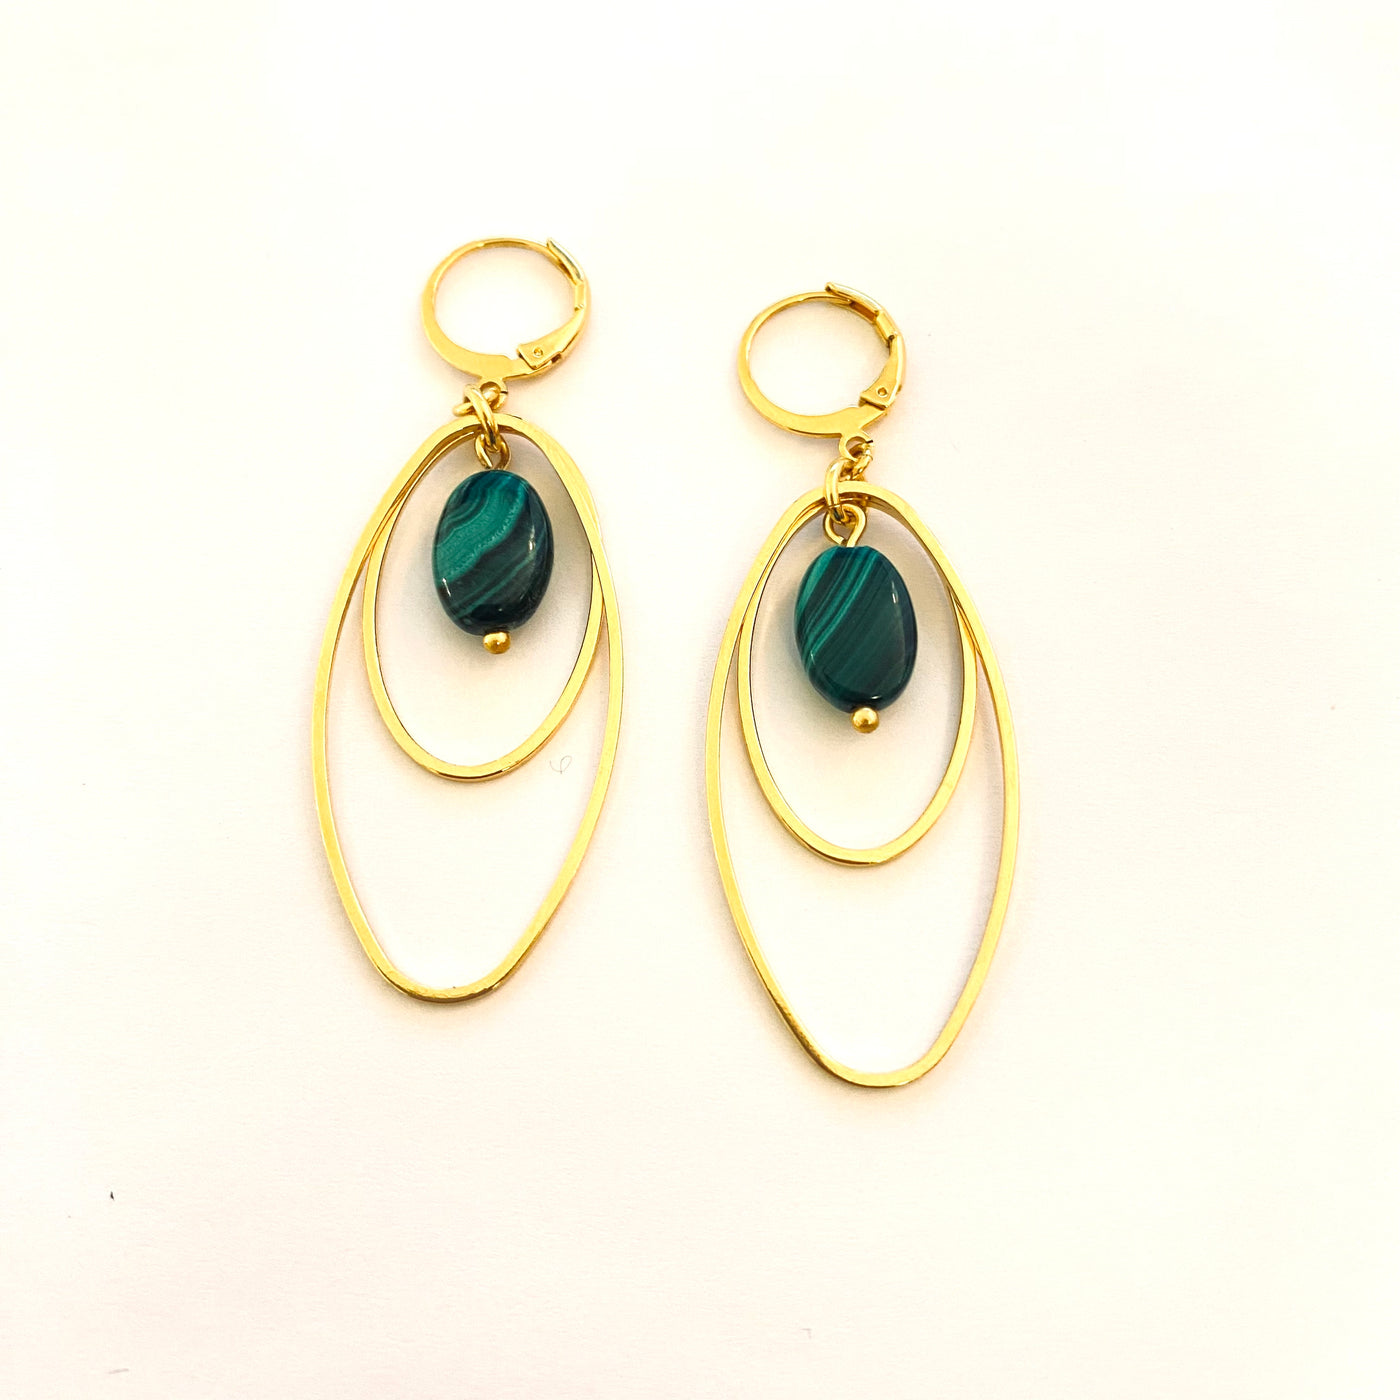 HAZEL - Green gold plated earrings